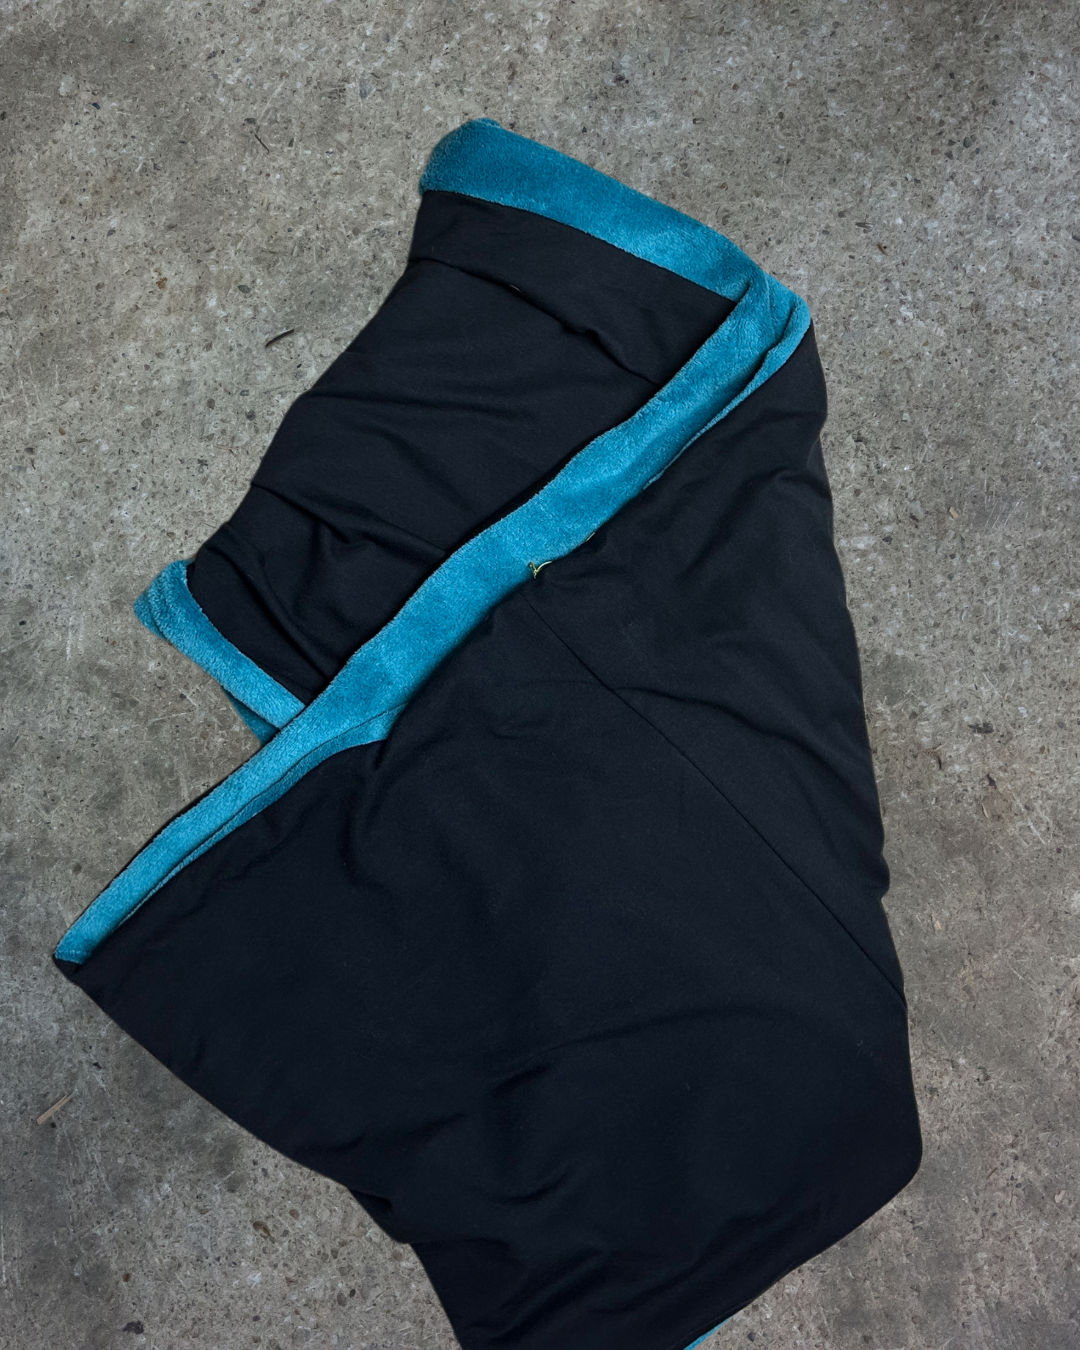 Bufanda grande reversible azul suave y negro